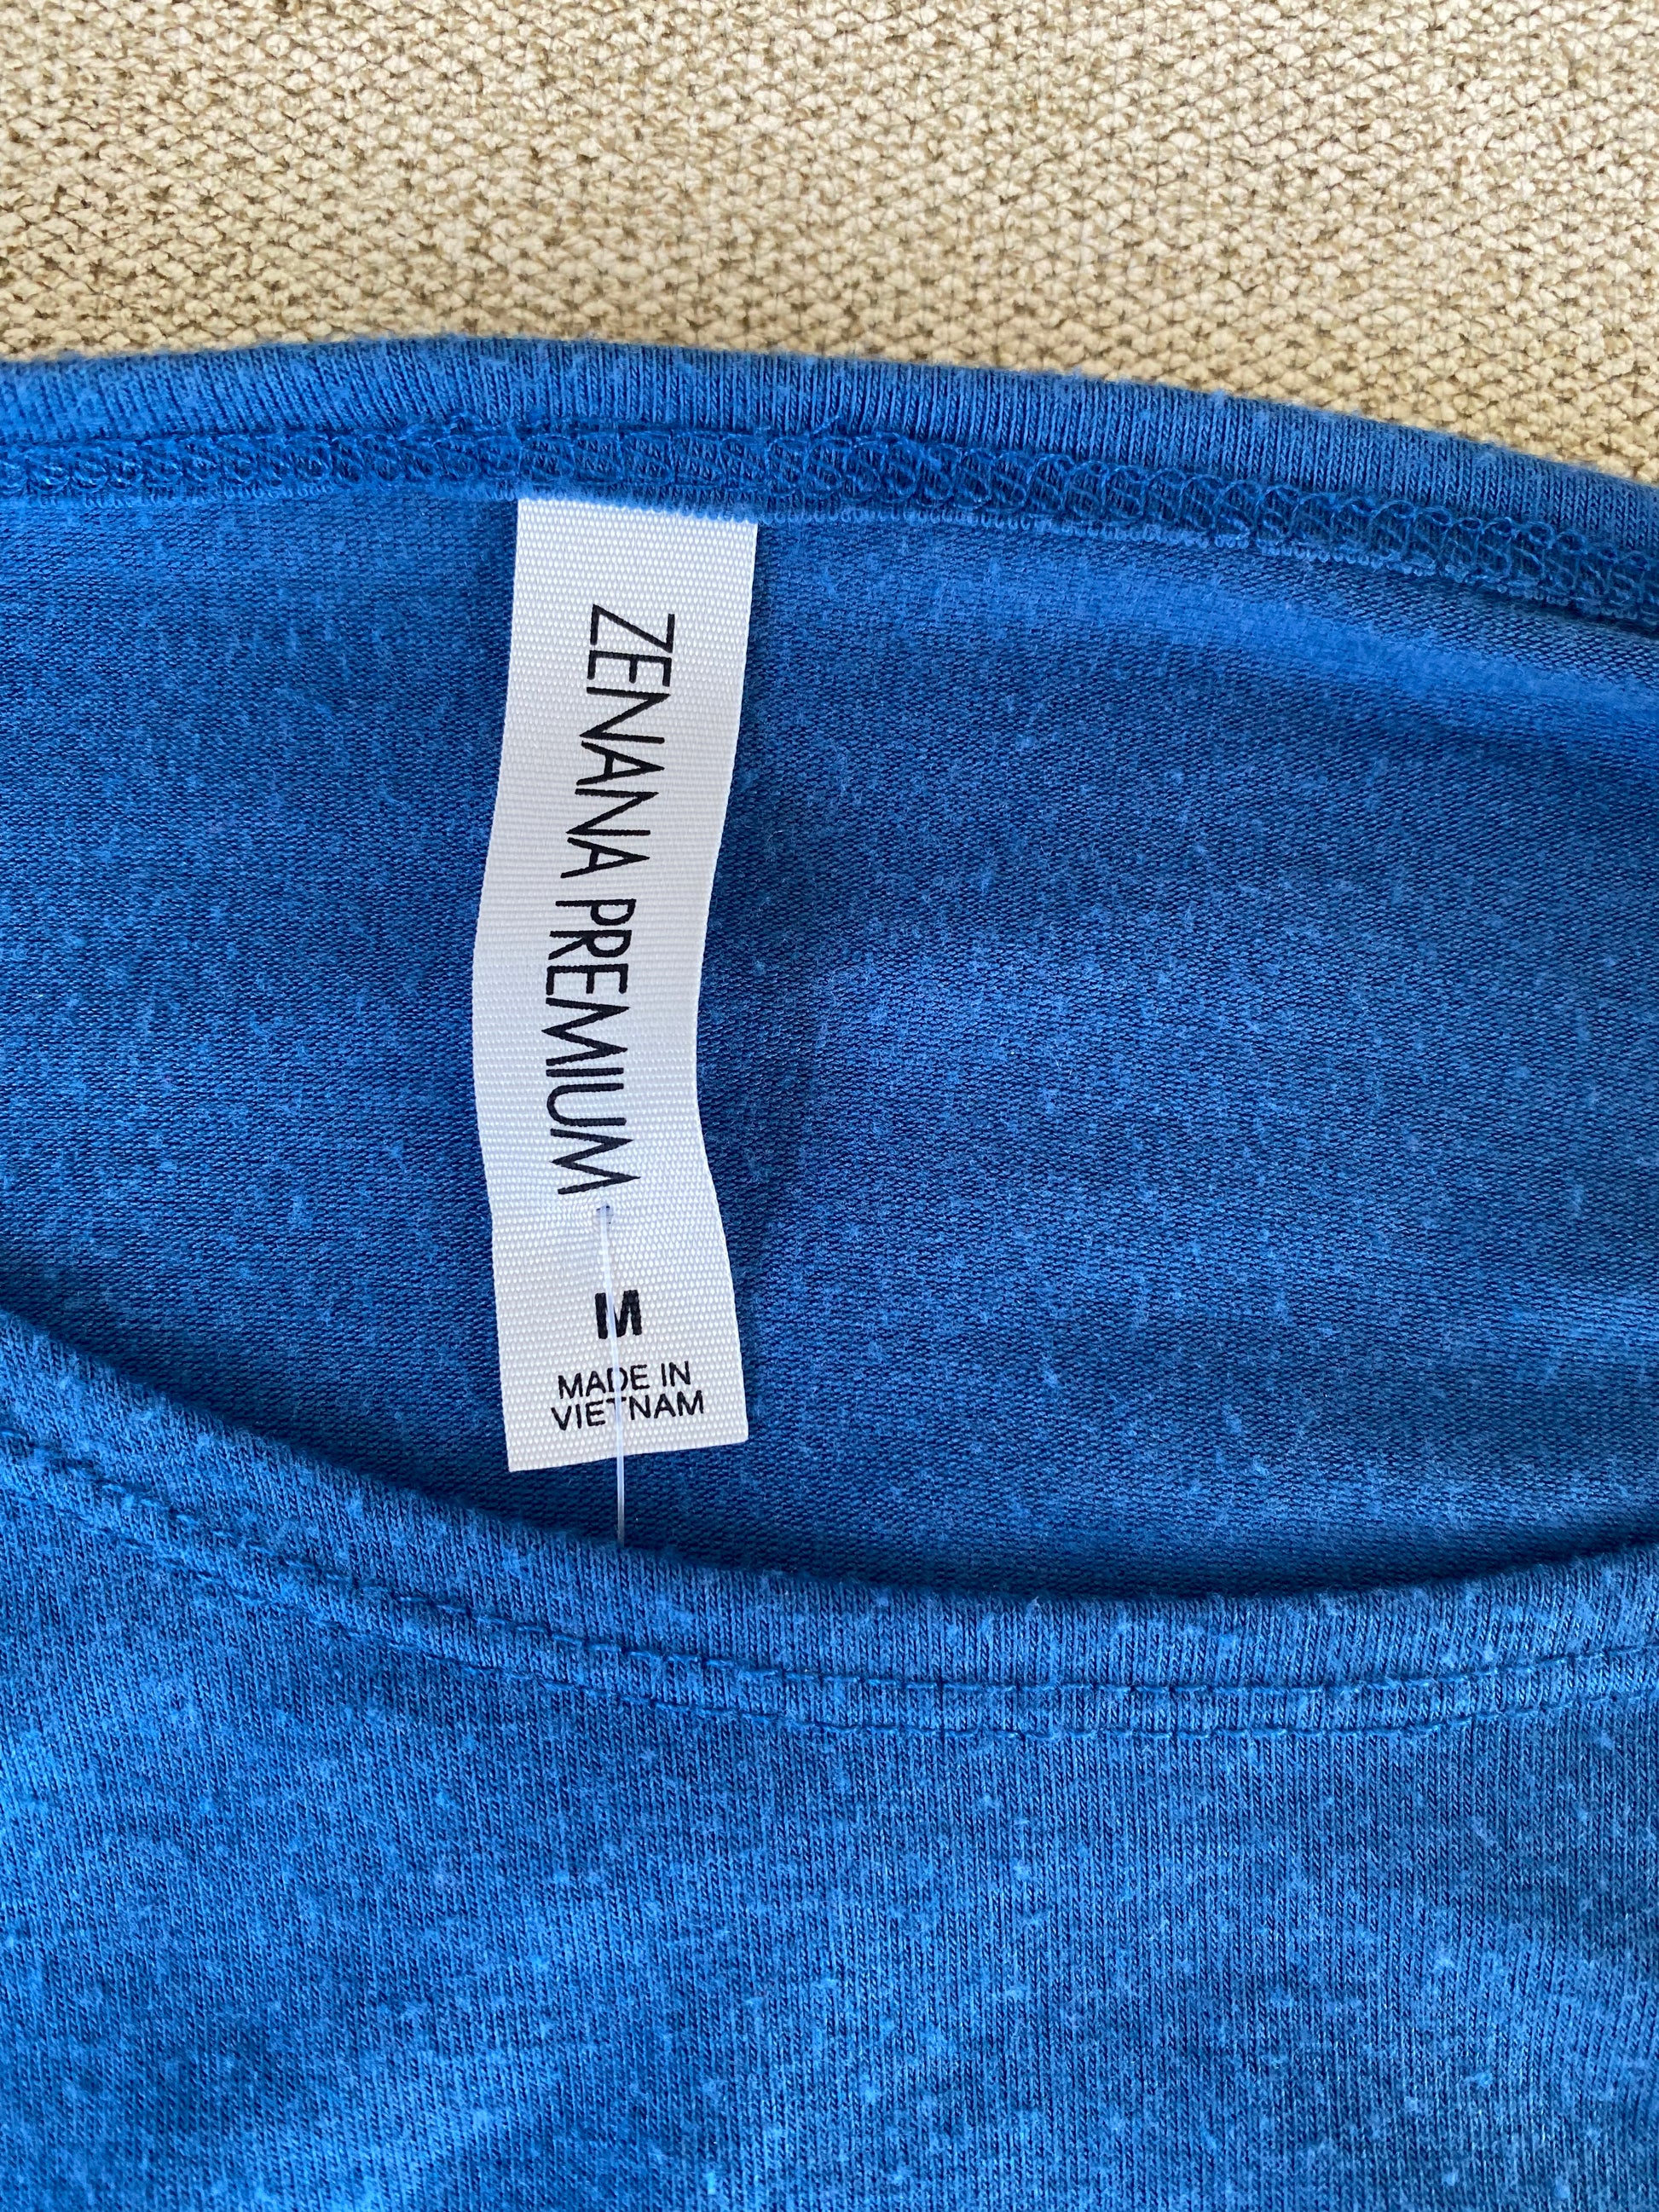 Zenana Premium Blue Knit Midi Dress